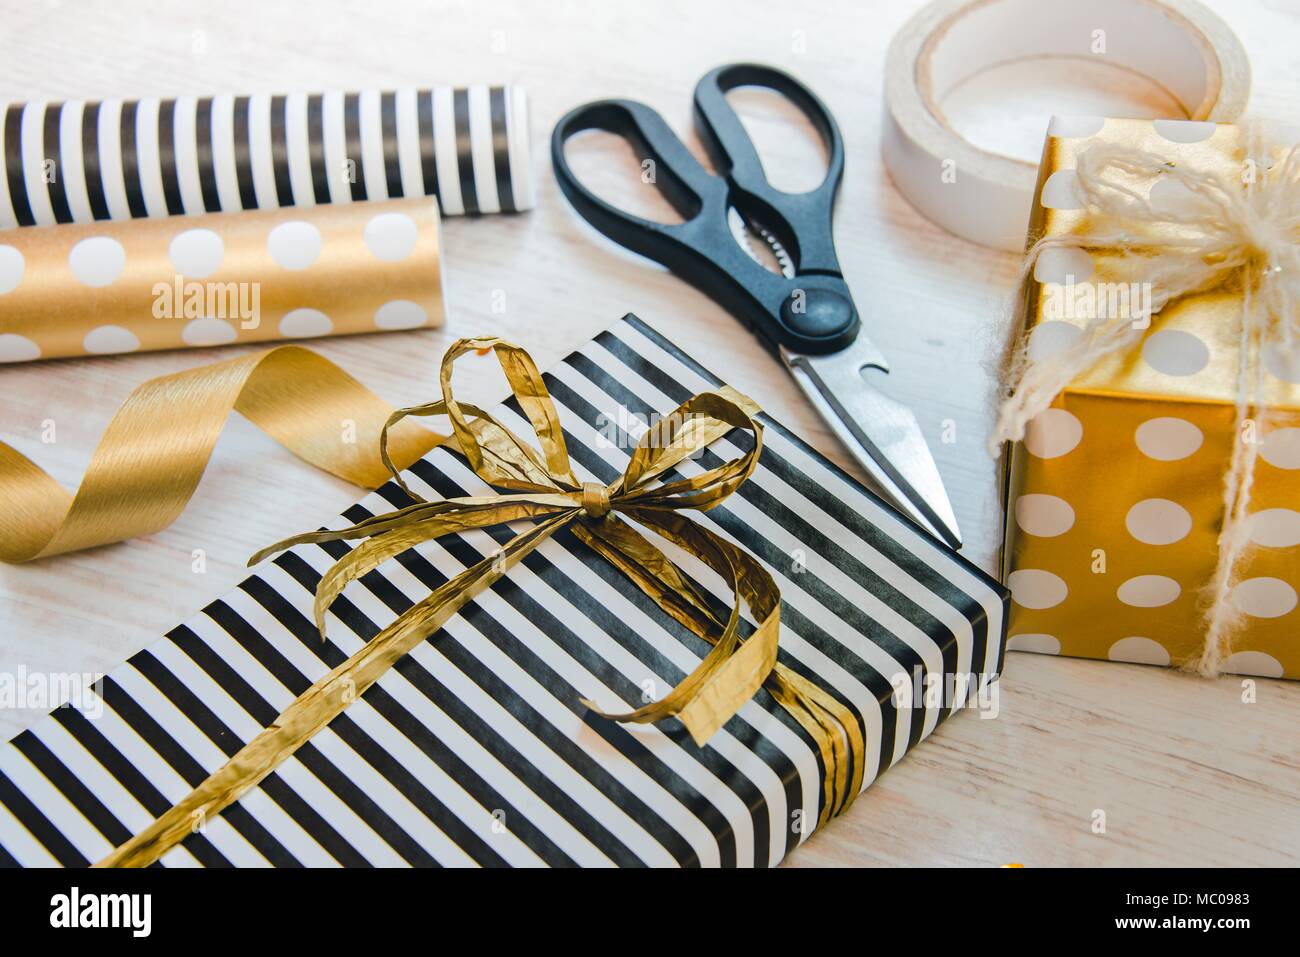 Cierre de cajas de regalos envueltos en rayas blancas y negras y doradas salpicadas de papel y materiales de embalaje de madera blanca sobre un fondo antiguo. Foto de stock